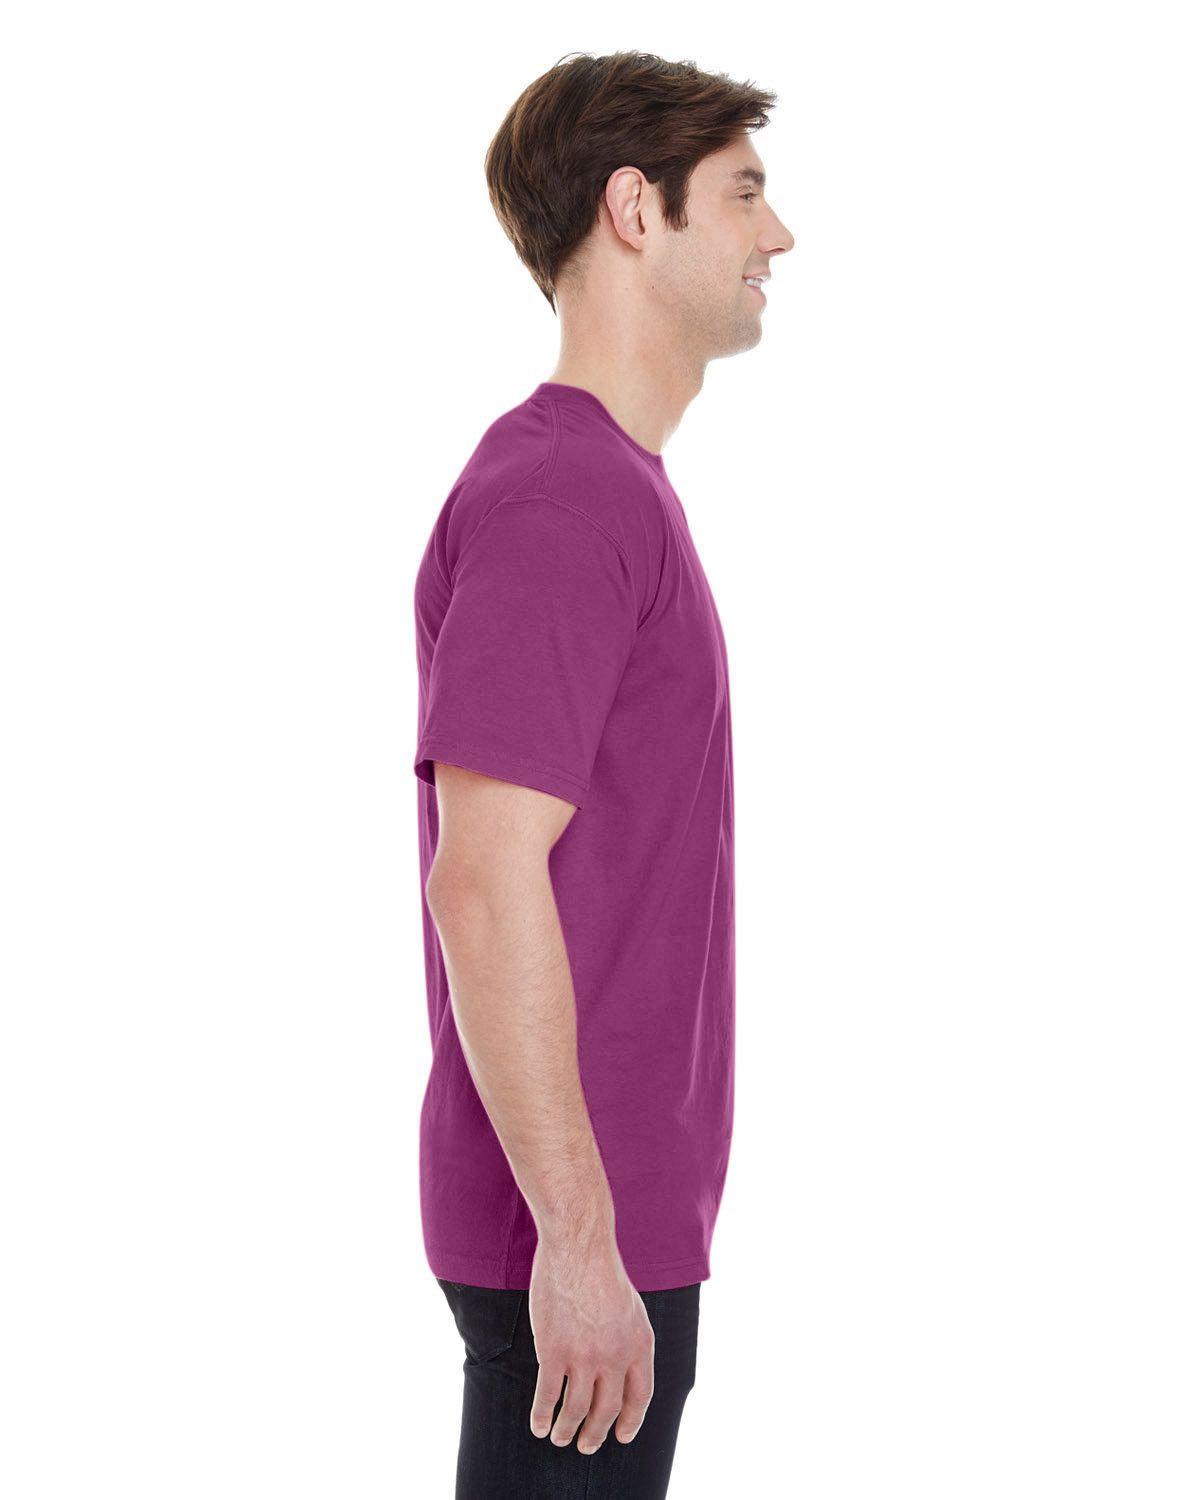 'Comfort Colors 4017 Garment Dyed Lightweight Ringspun Short Sleeve T-Shirt'